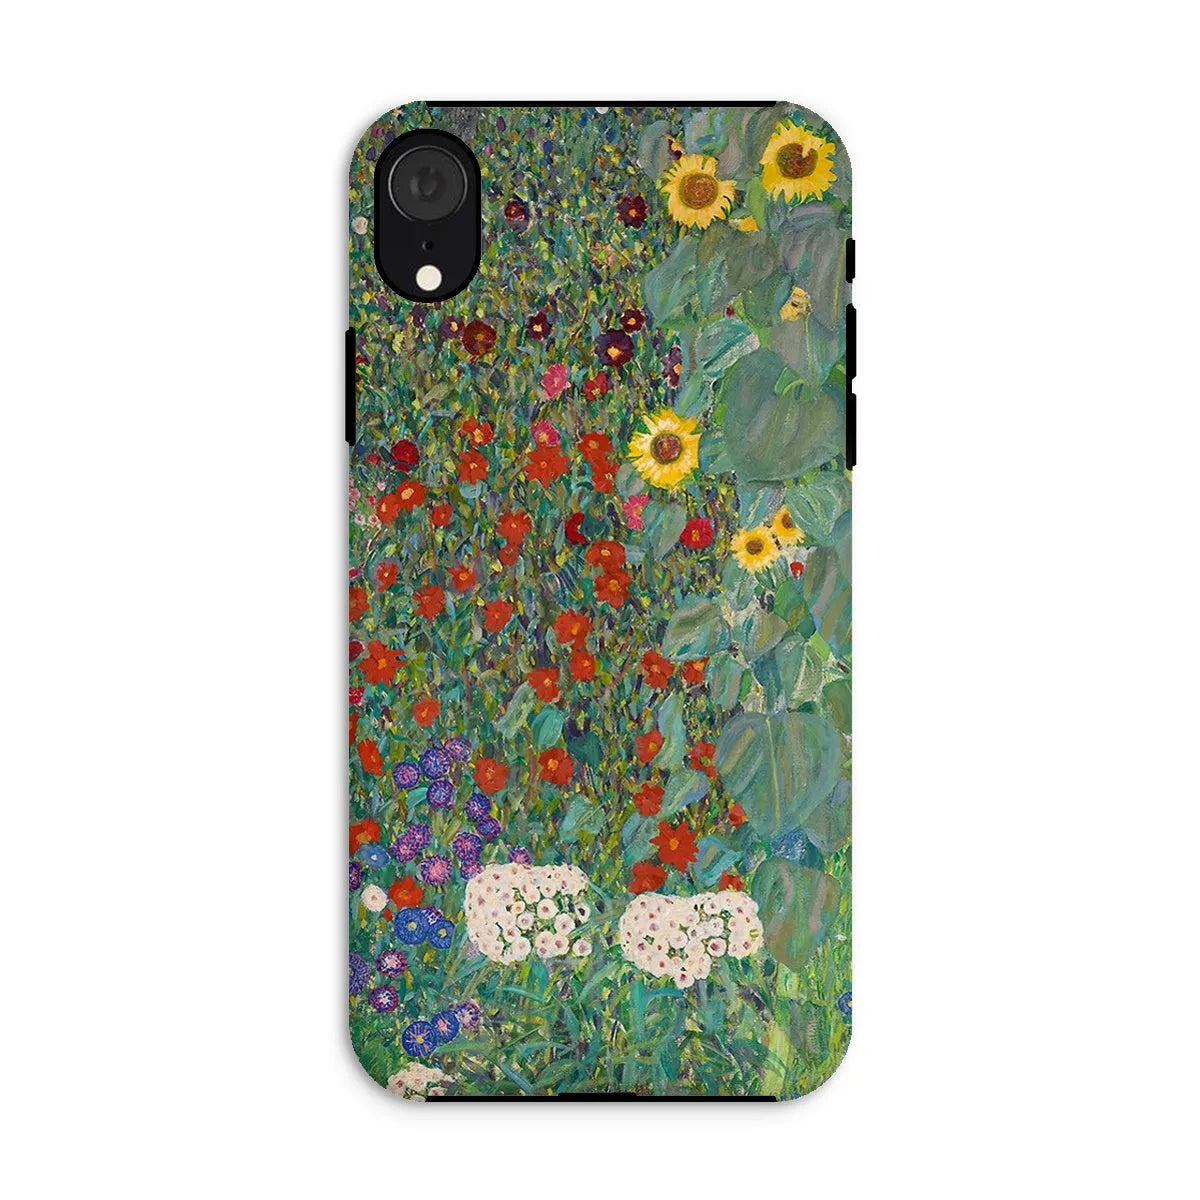 Farm Garden With Sunflowers Art Phone Case - Gustav Klimt - Iphone Xr / Matte - Mobile Phone Cases - Aesthetic Art